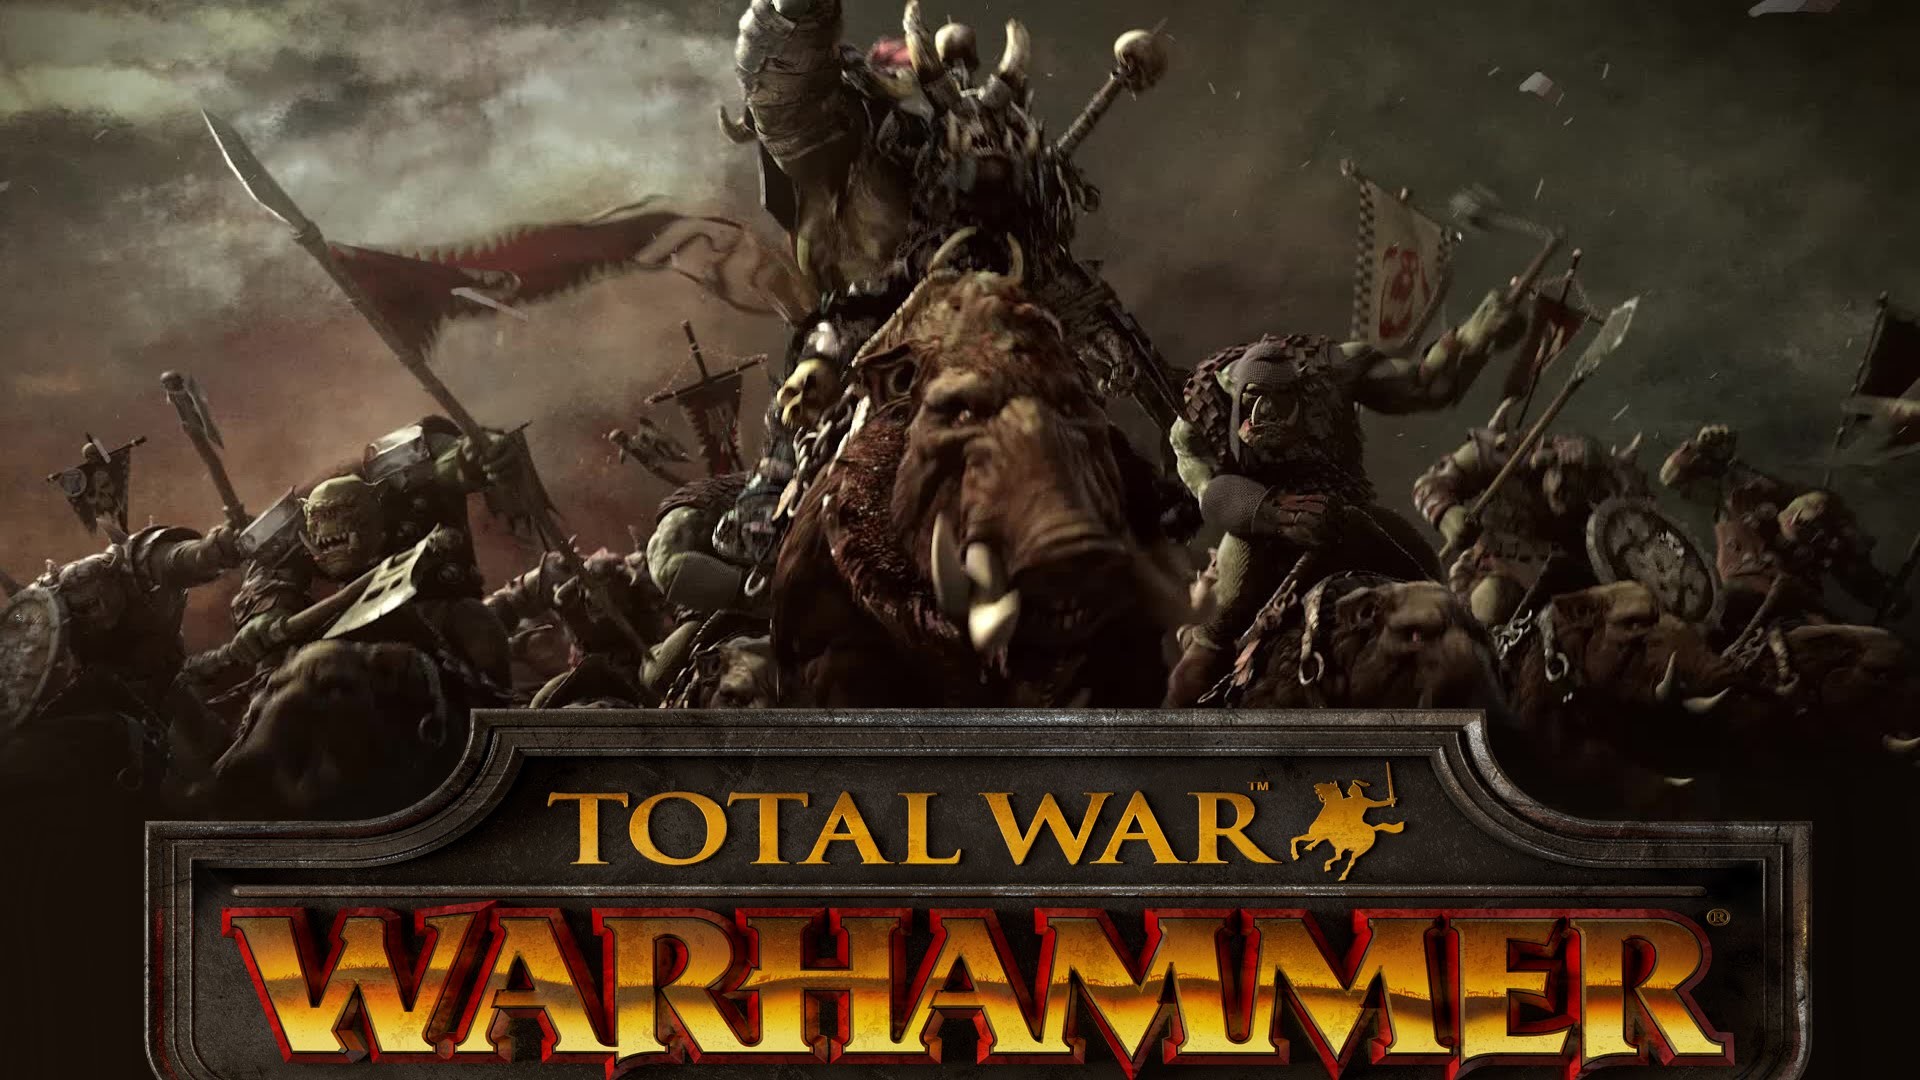 Total War Warhammer – Announcement Cinematic Trailer